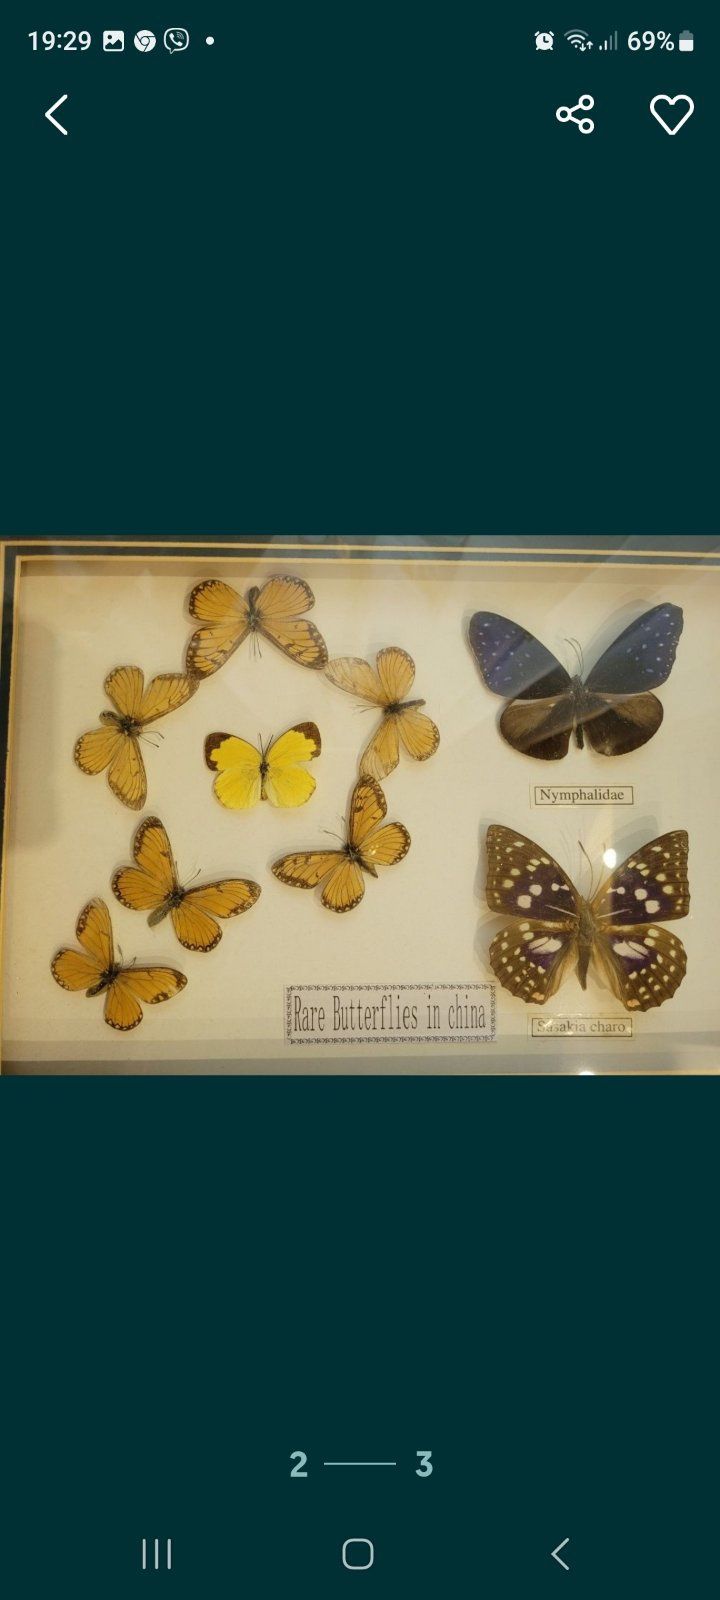 Энтомологическая коллекция тропических бабочек в рамке